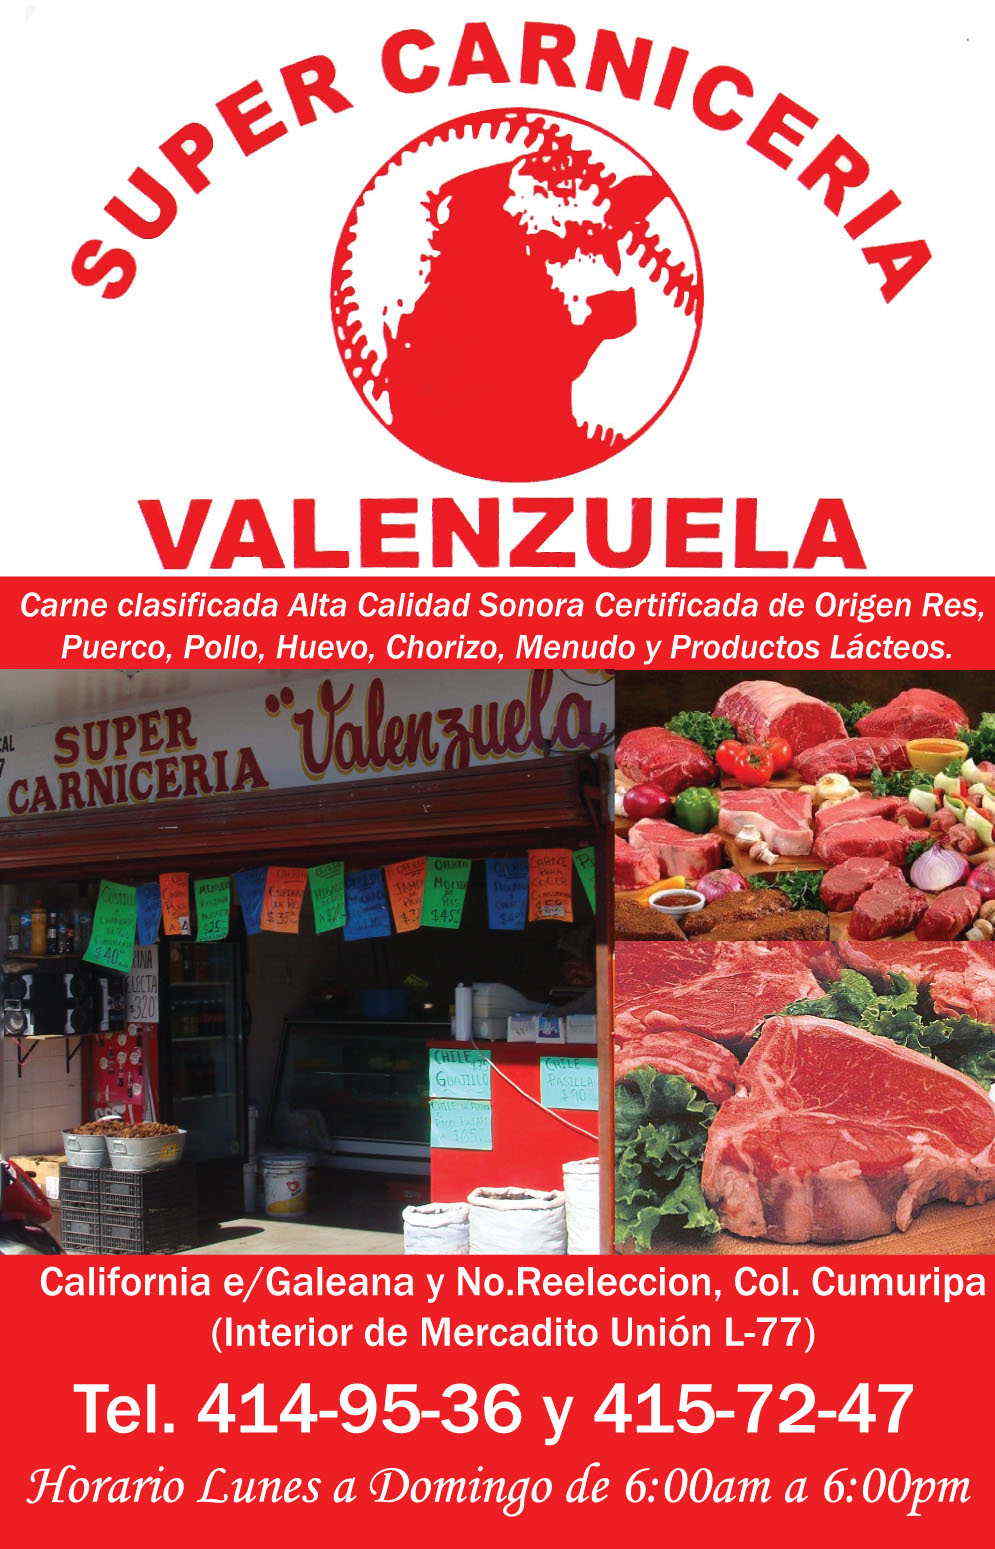 Super Carniceria VALENZUELA-Carne clasificada Alta Calidad Sonora Certificada de Origen Res, Puerco, y Pollo, Huevo, Chorizo, Menudo y Productos Lacteos